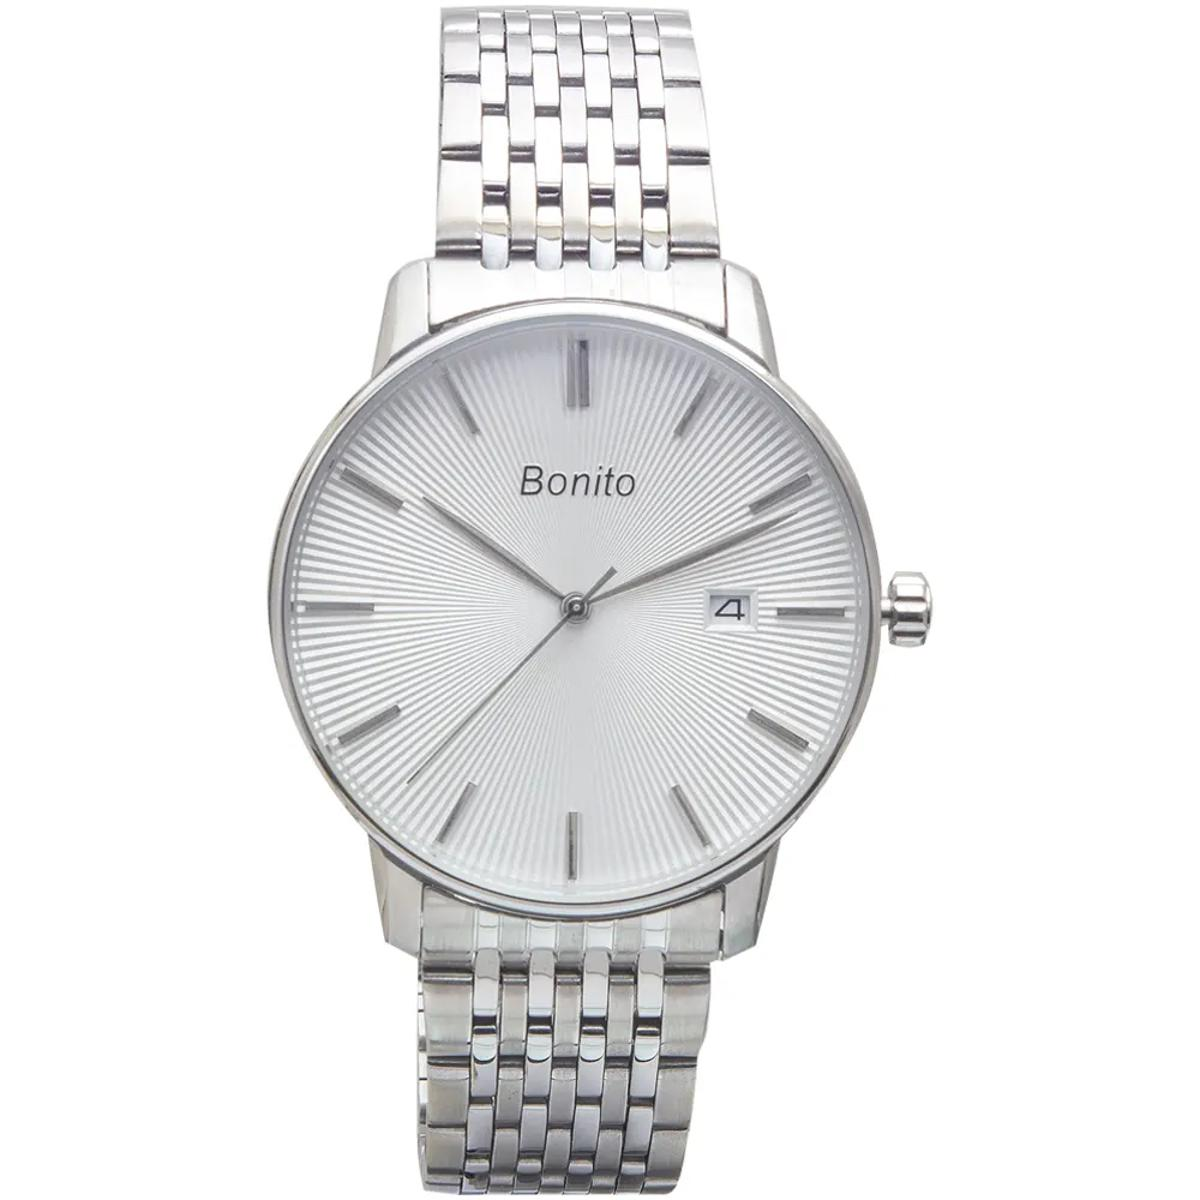 Bonito Watches For Men / Original Bonito Watches In Pakistan / Bonito  Watches Price / Men's Watches - YouTube